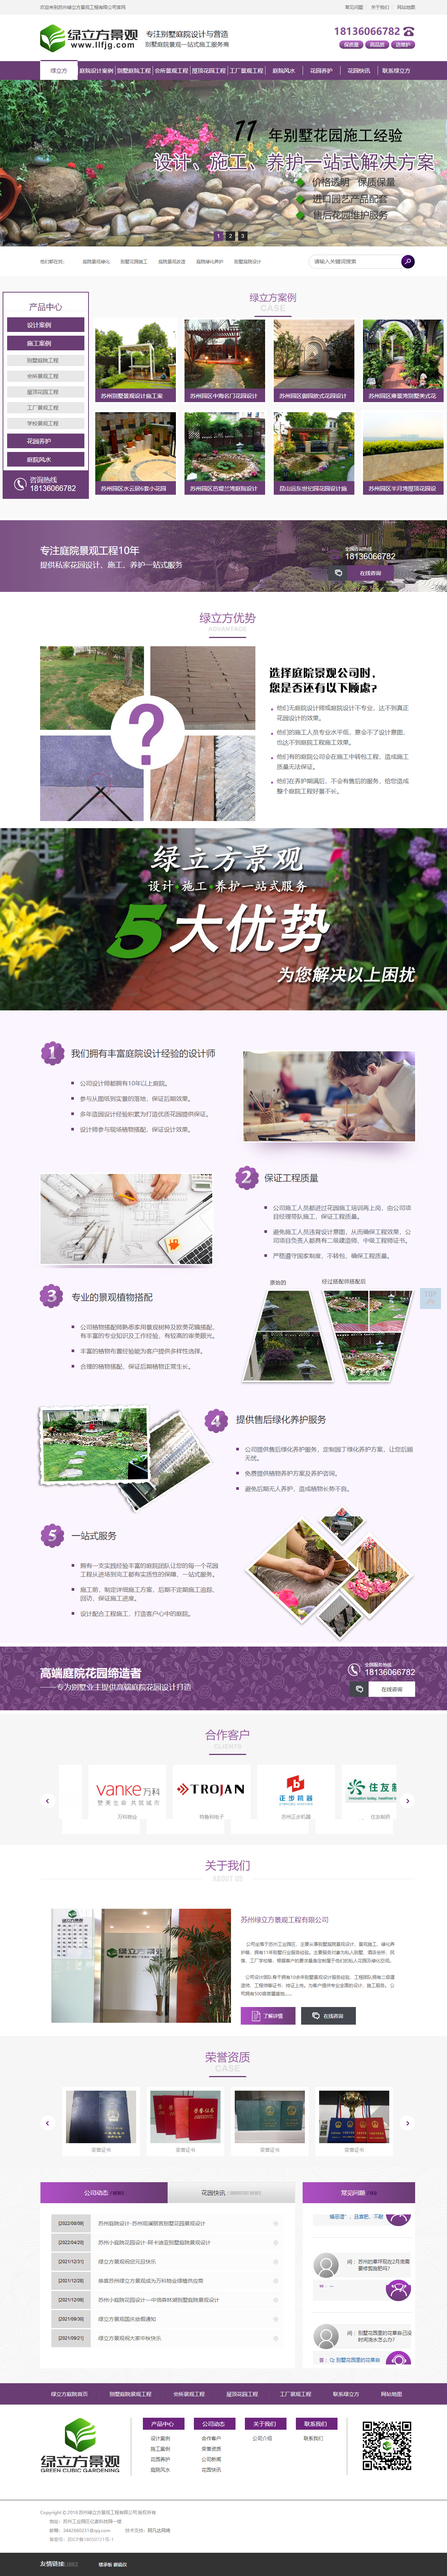 苏州绿立方别墅庭院设计营销型网站建设案例 PC端预览图